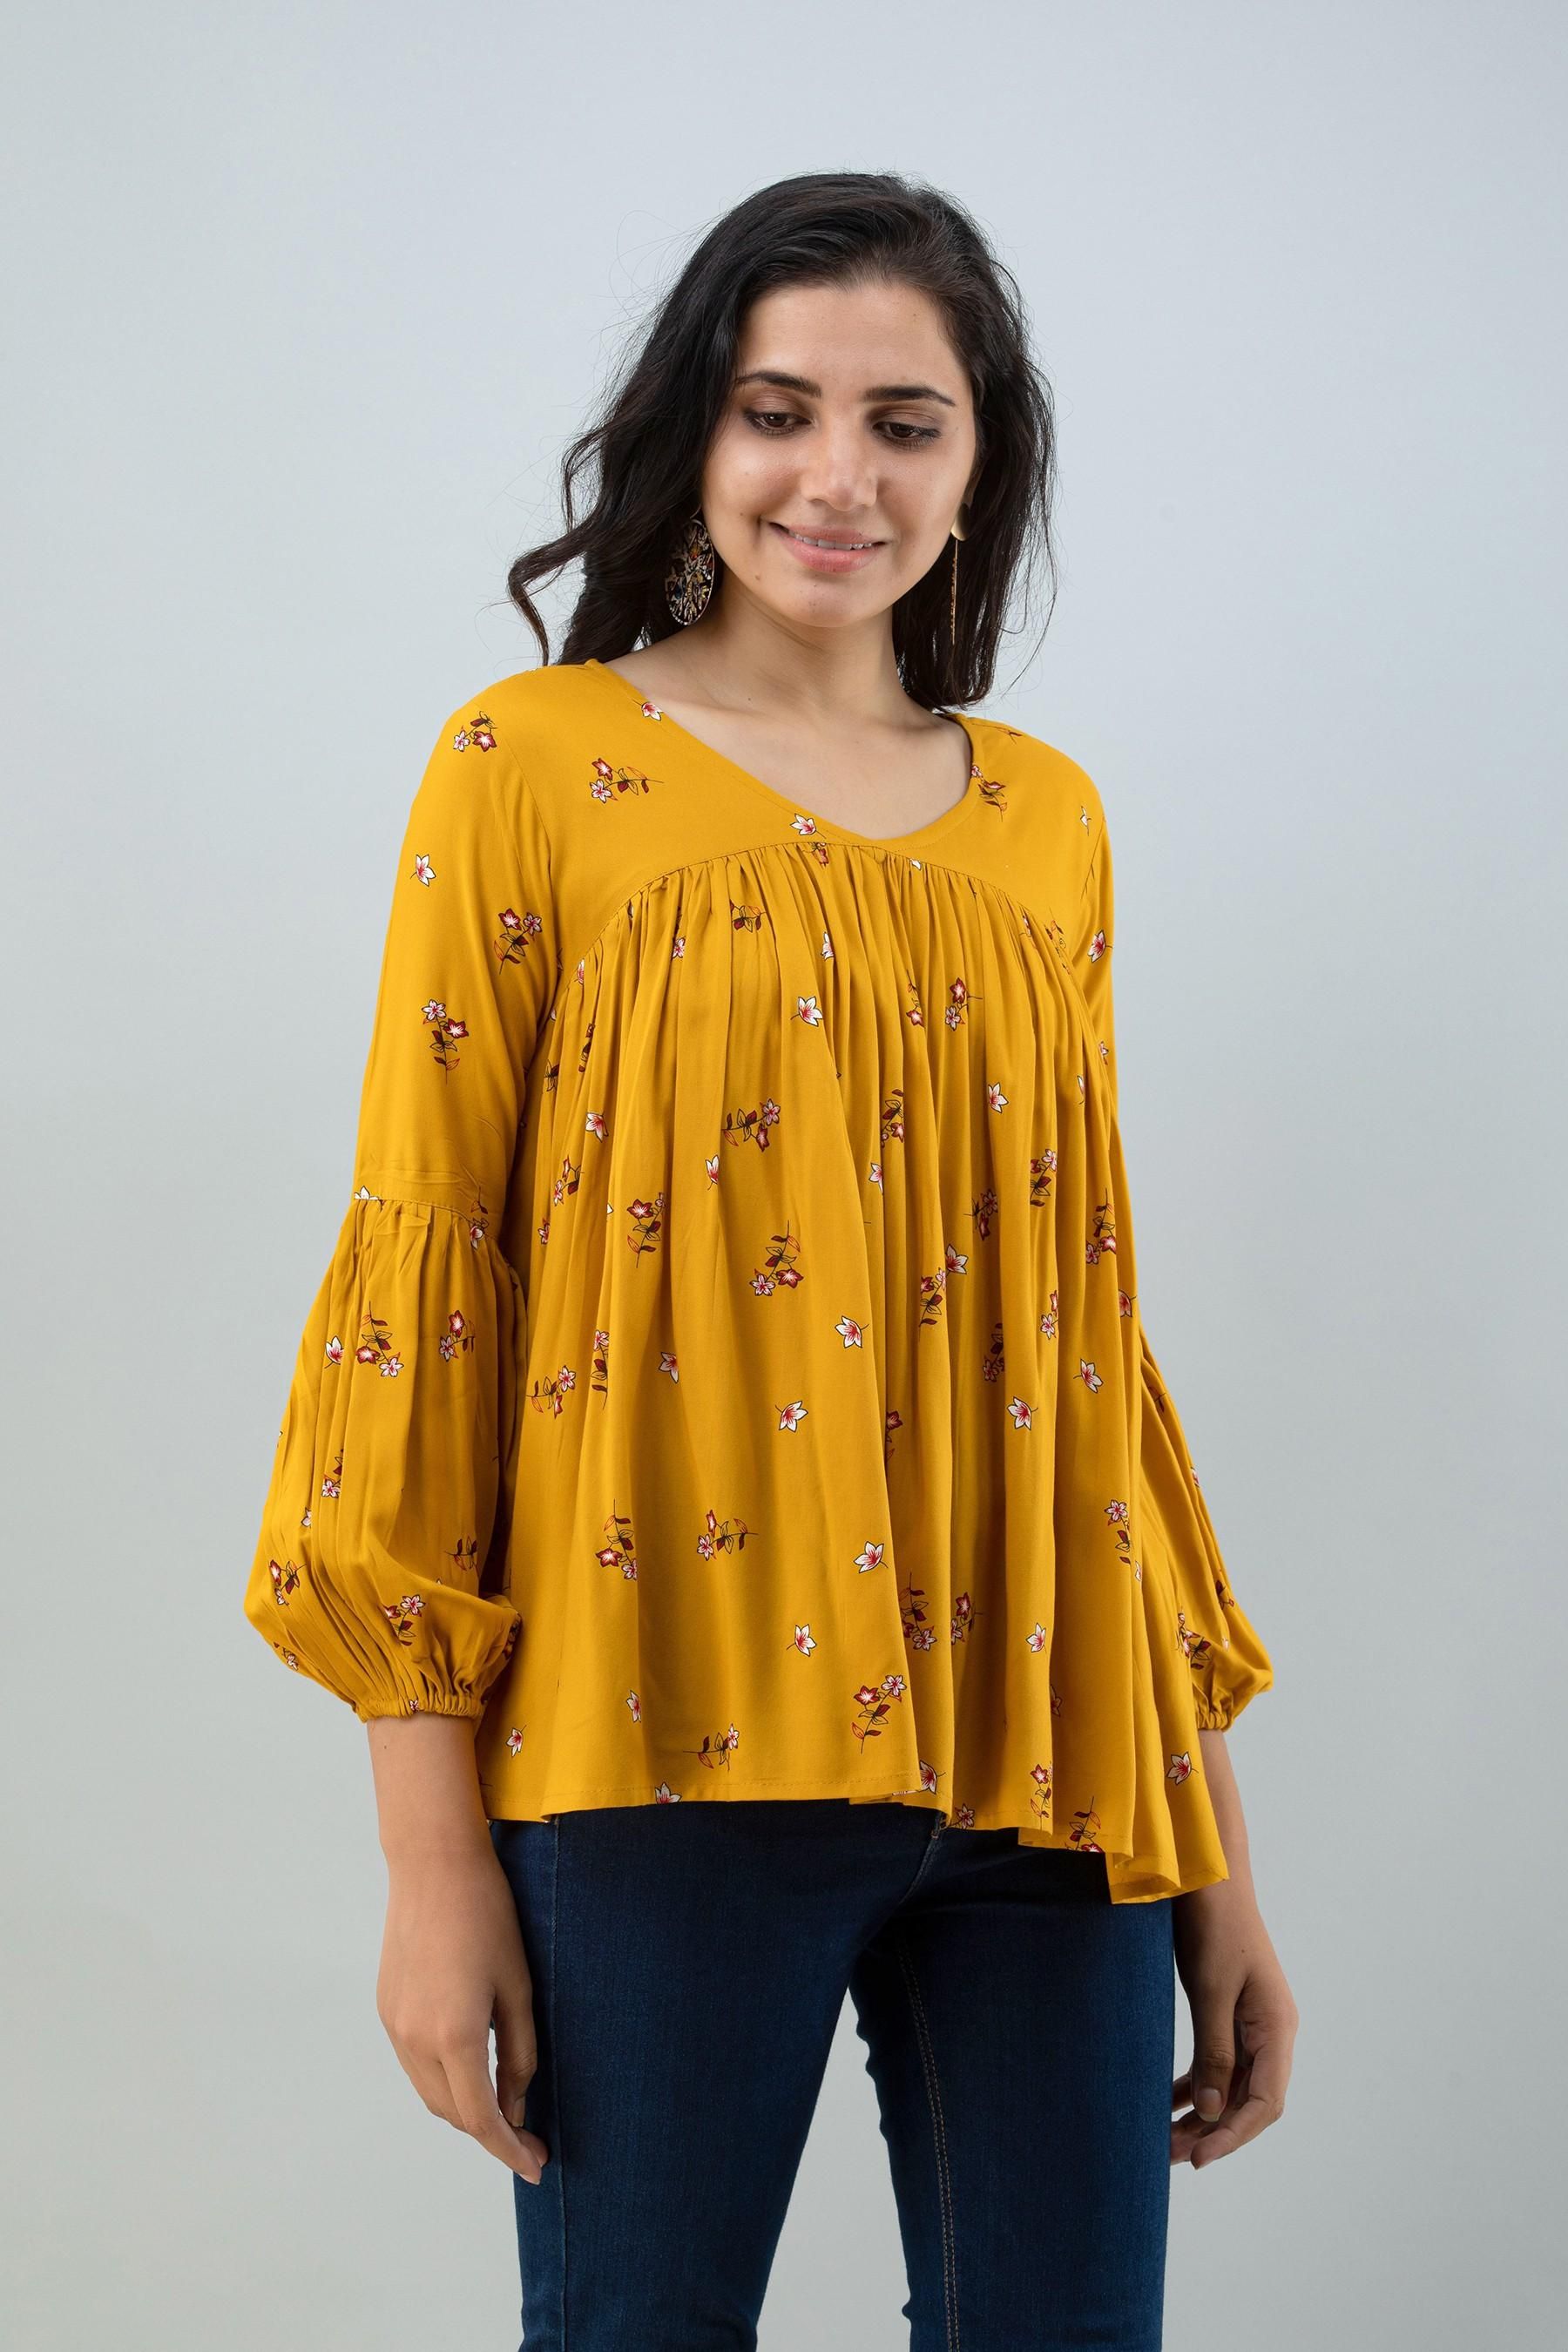 FLAMBOYANT Casual Regular Sleeves Printed Women Yellow Top